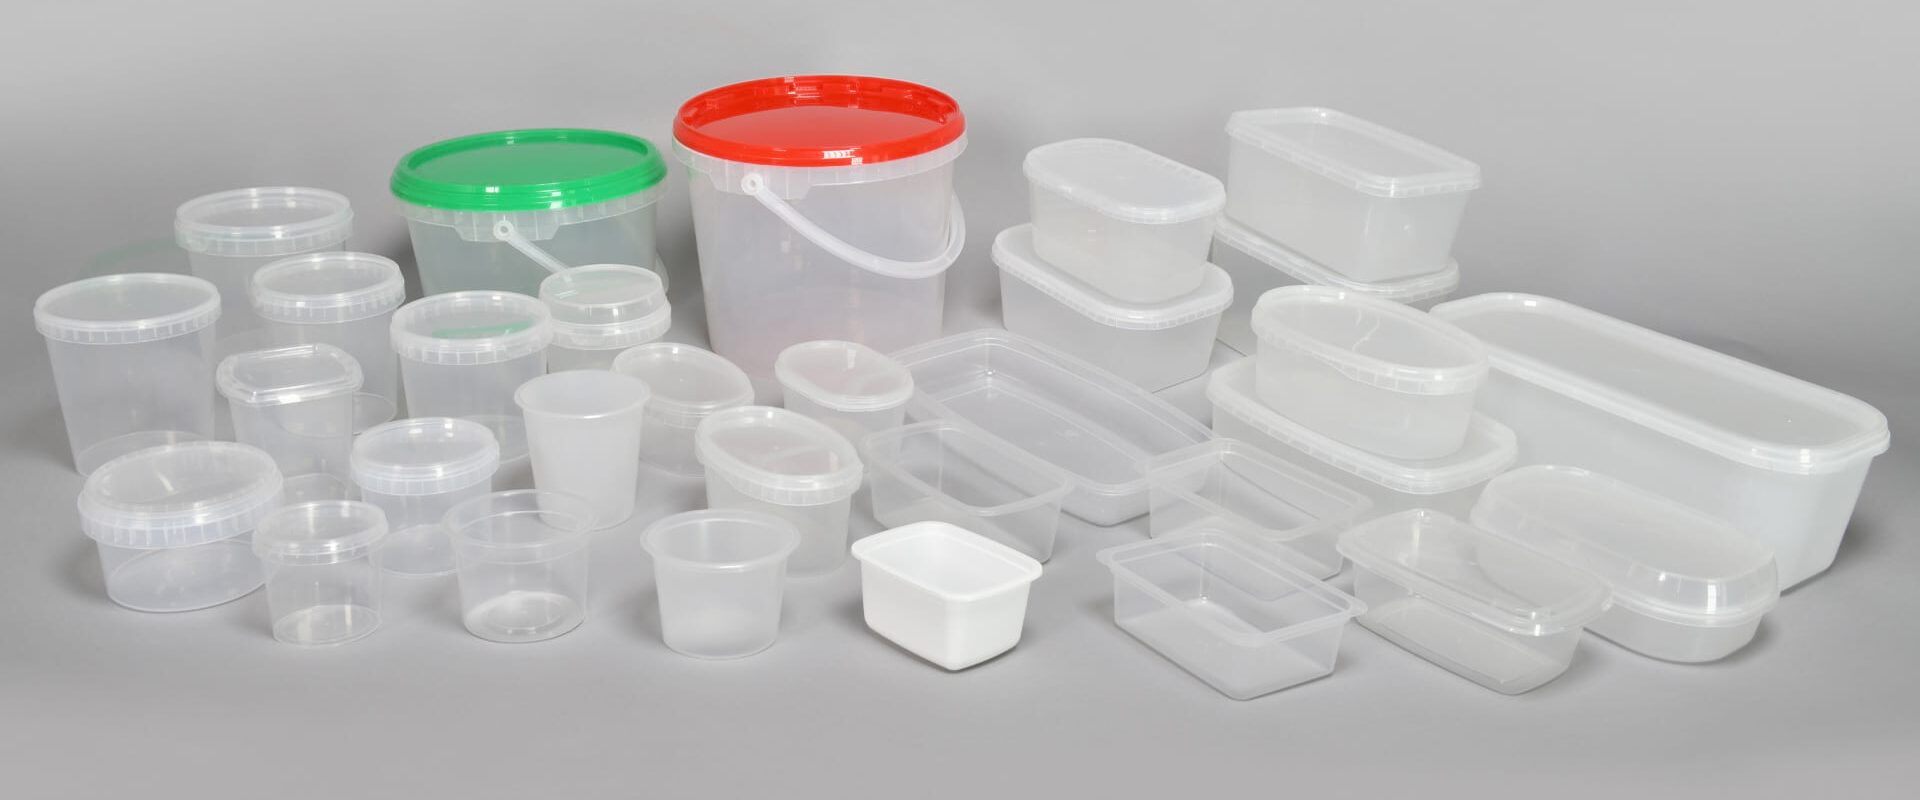 contenitori industriali in plastica per alimenti